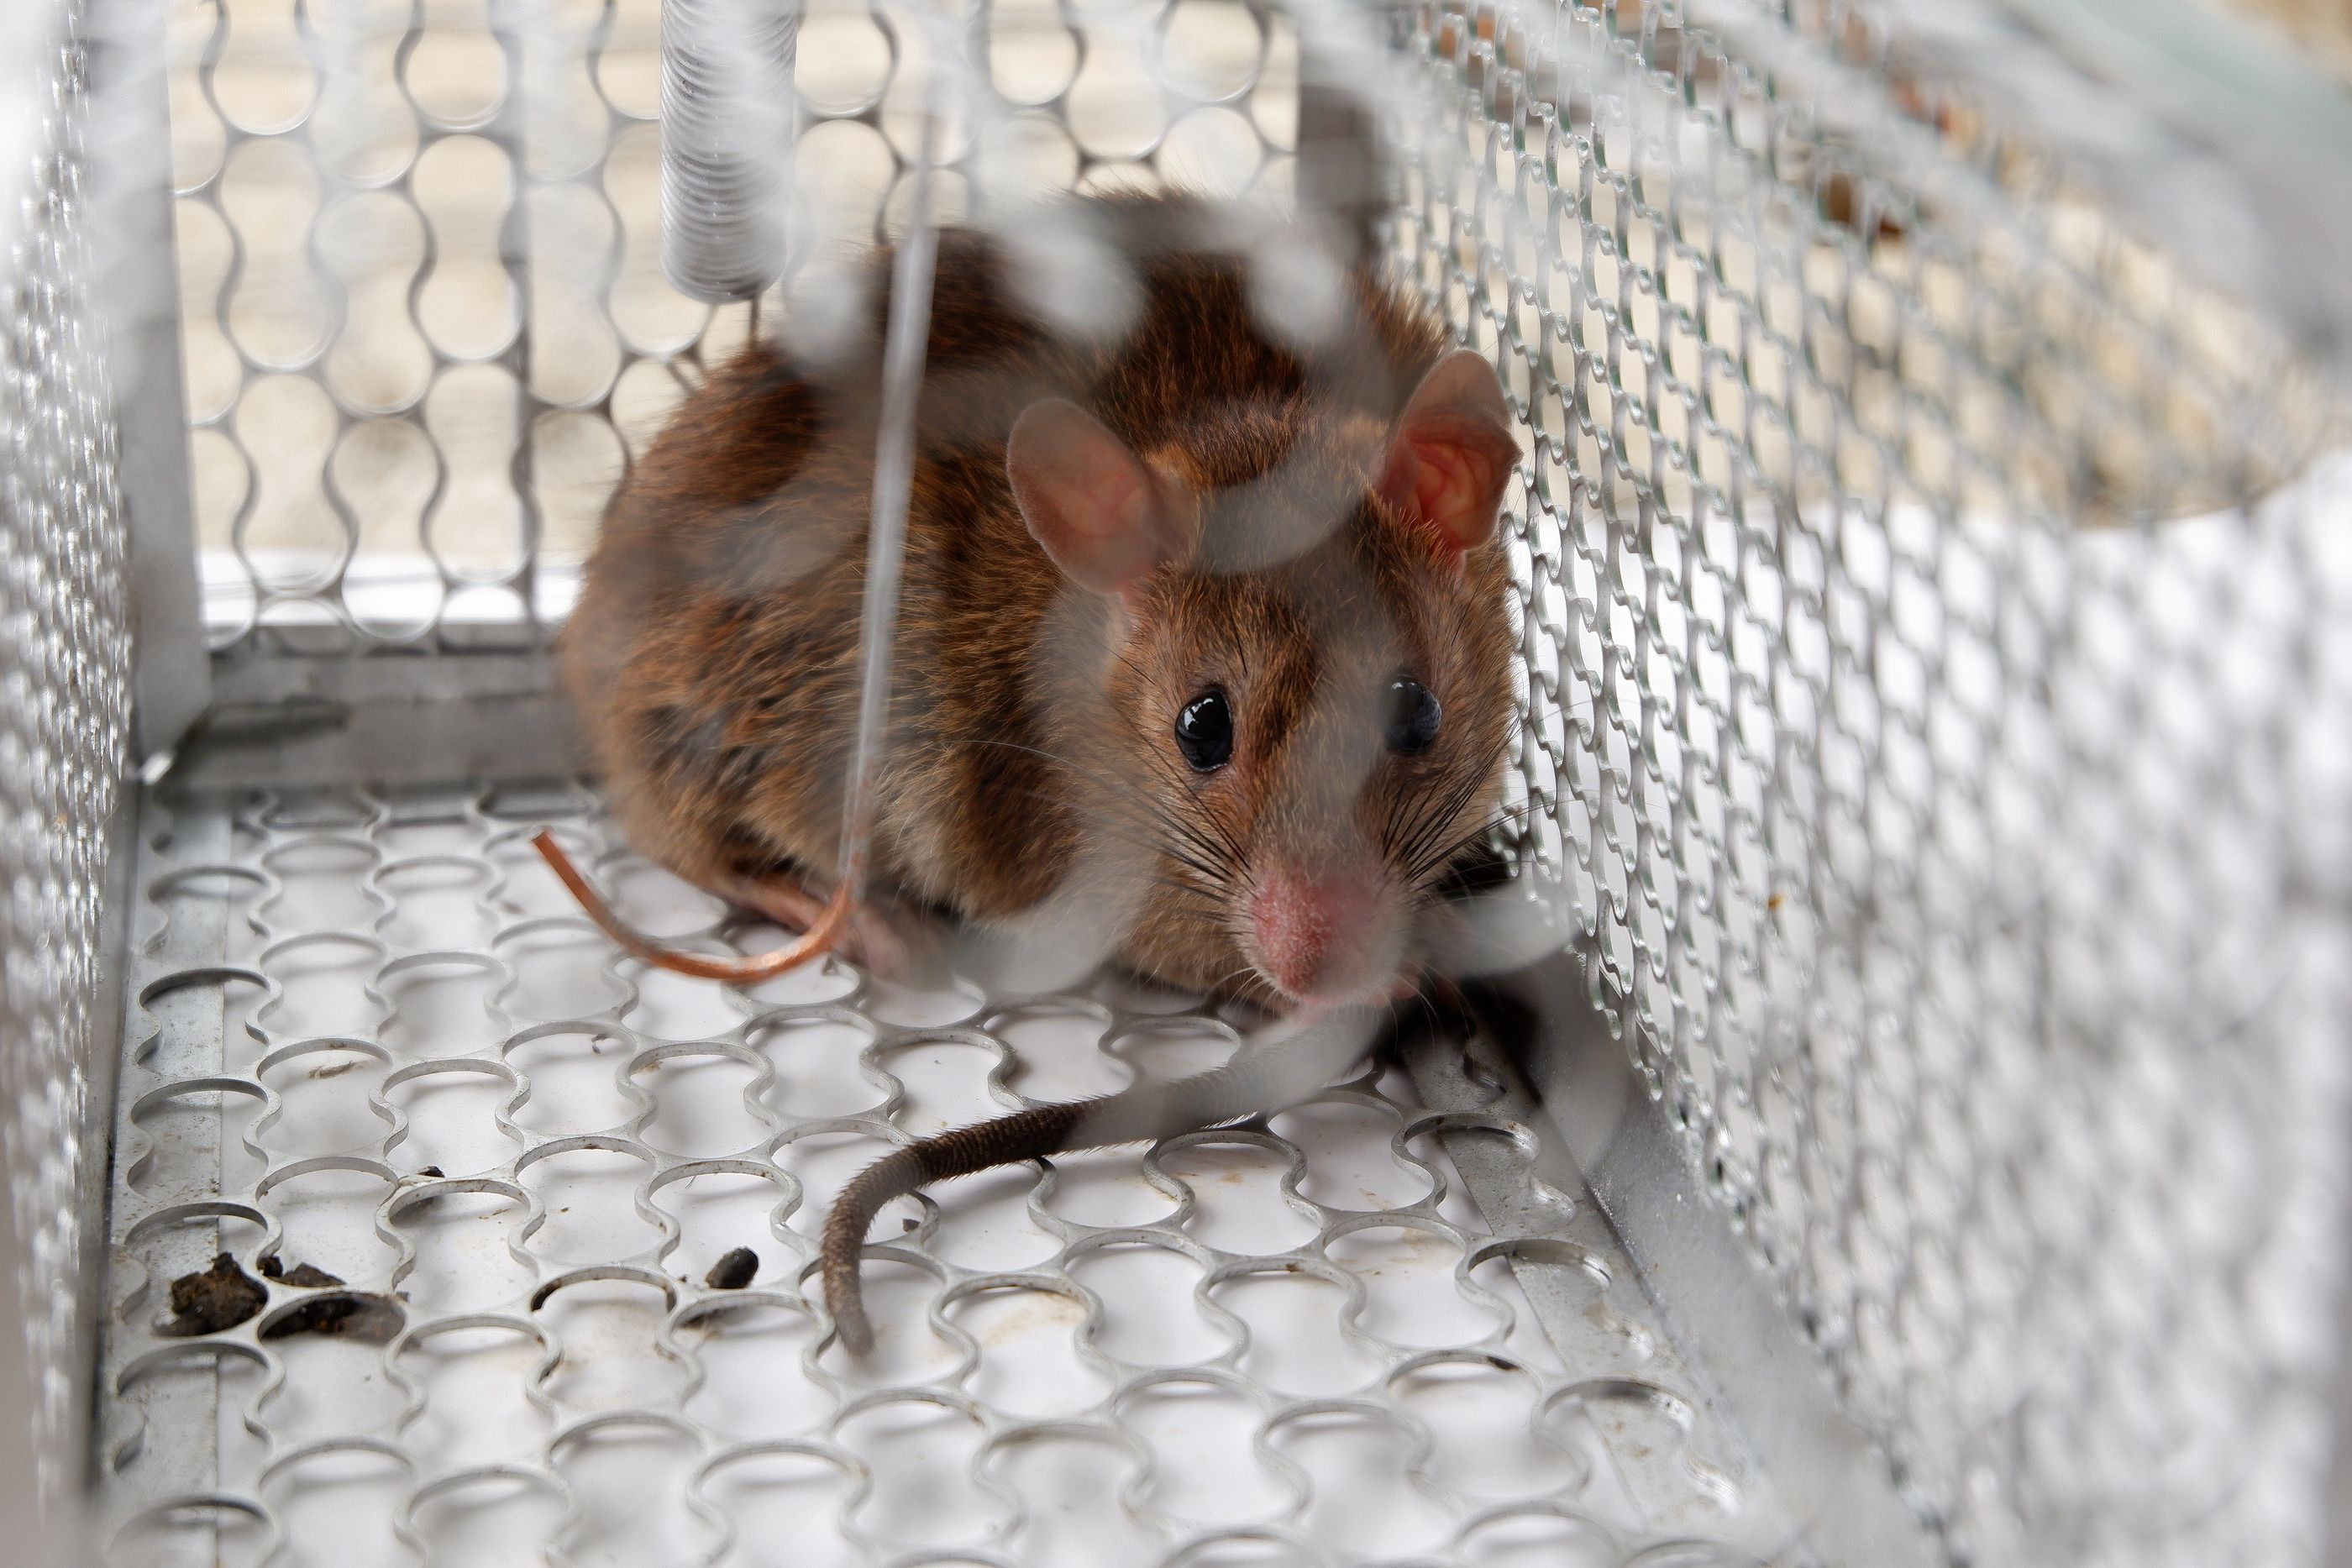 Un equipo de científicos consigue revertir el proceso de envejecimiento en ratones